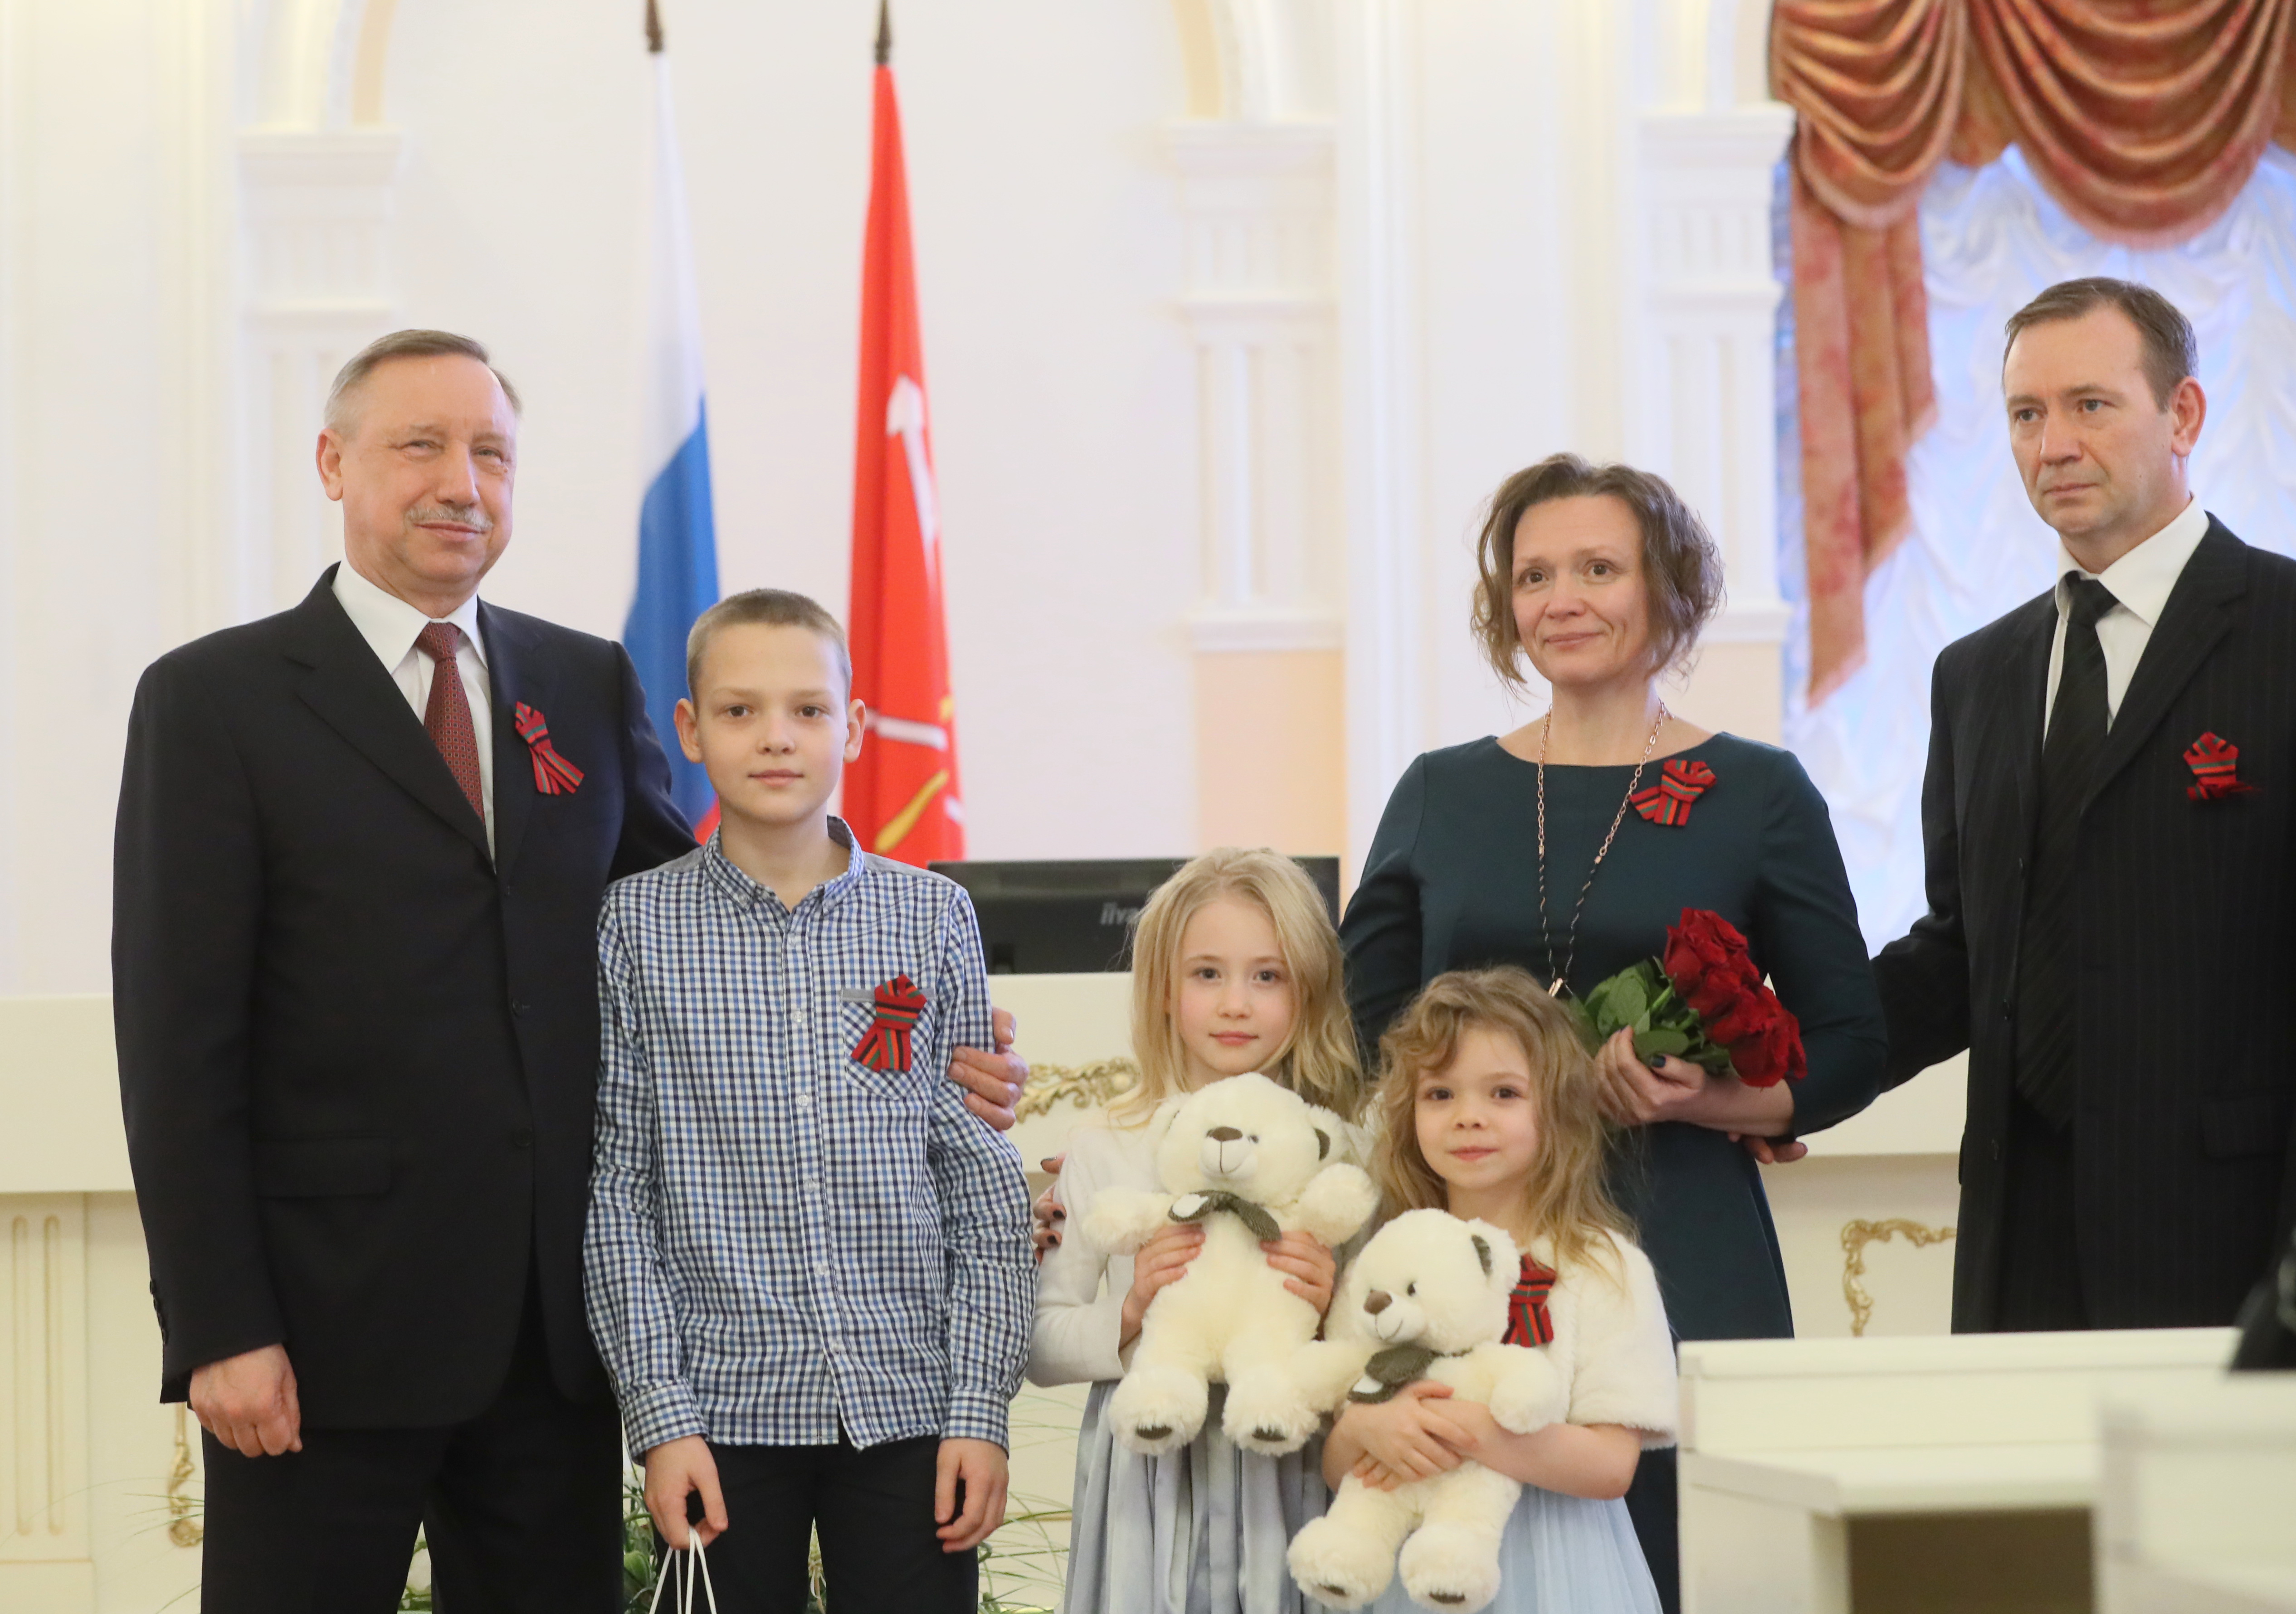 Многодетная семья СПБ. Год семьи. Наградил губернатор многодетные семьи в Санкт-Петербурге 2022. Награждение Бегловым в Смольном многодетных семей.